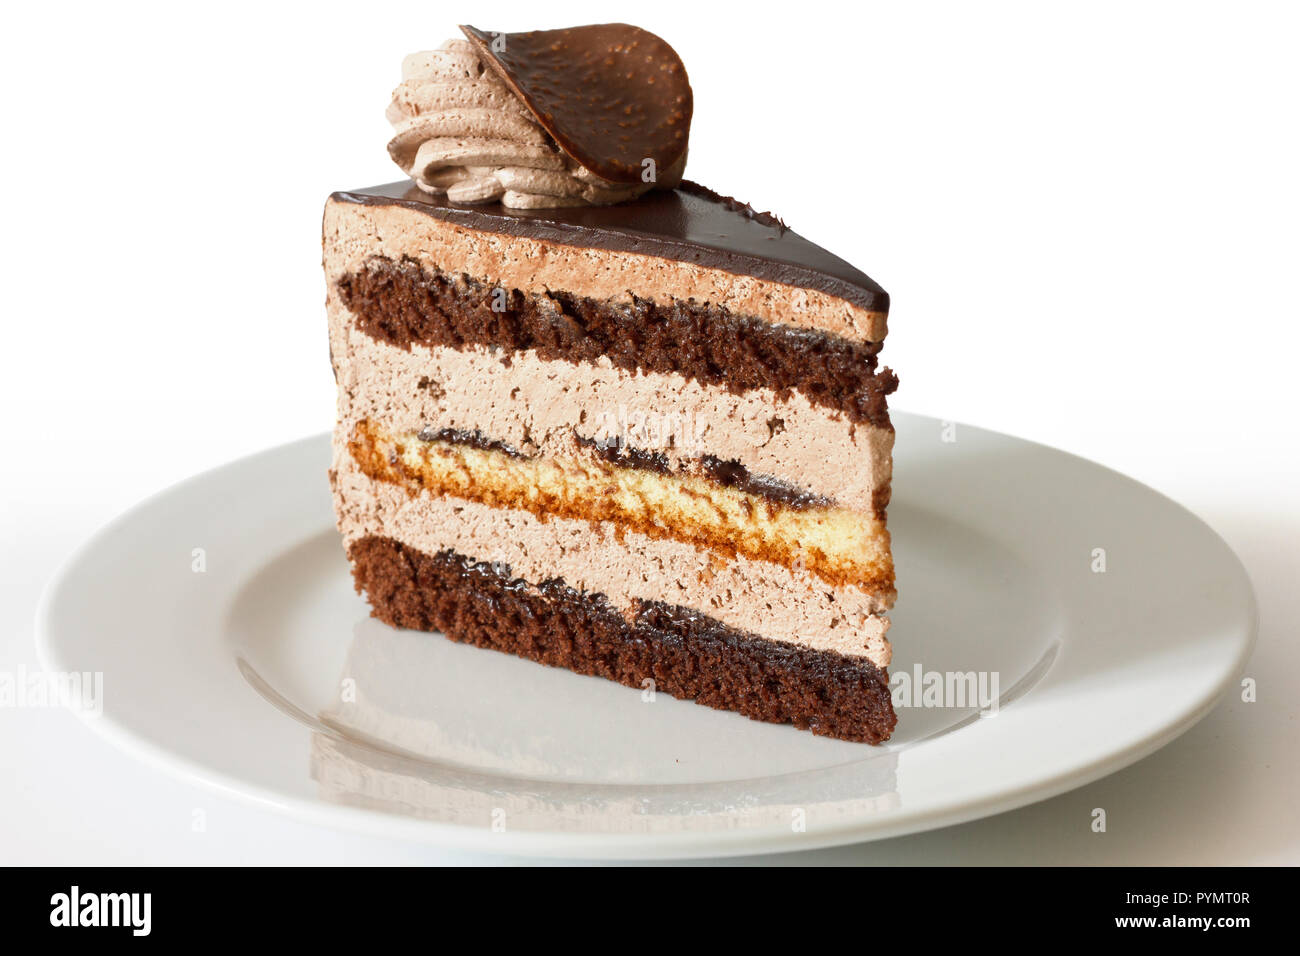 Layered chocolate cake Stock Photo